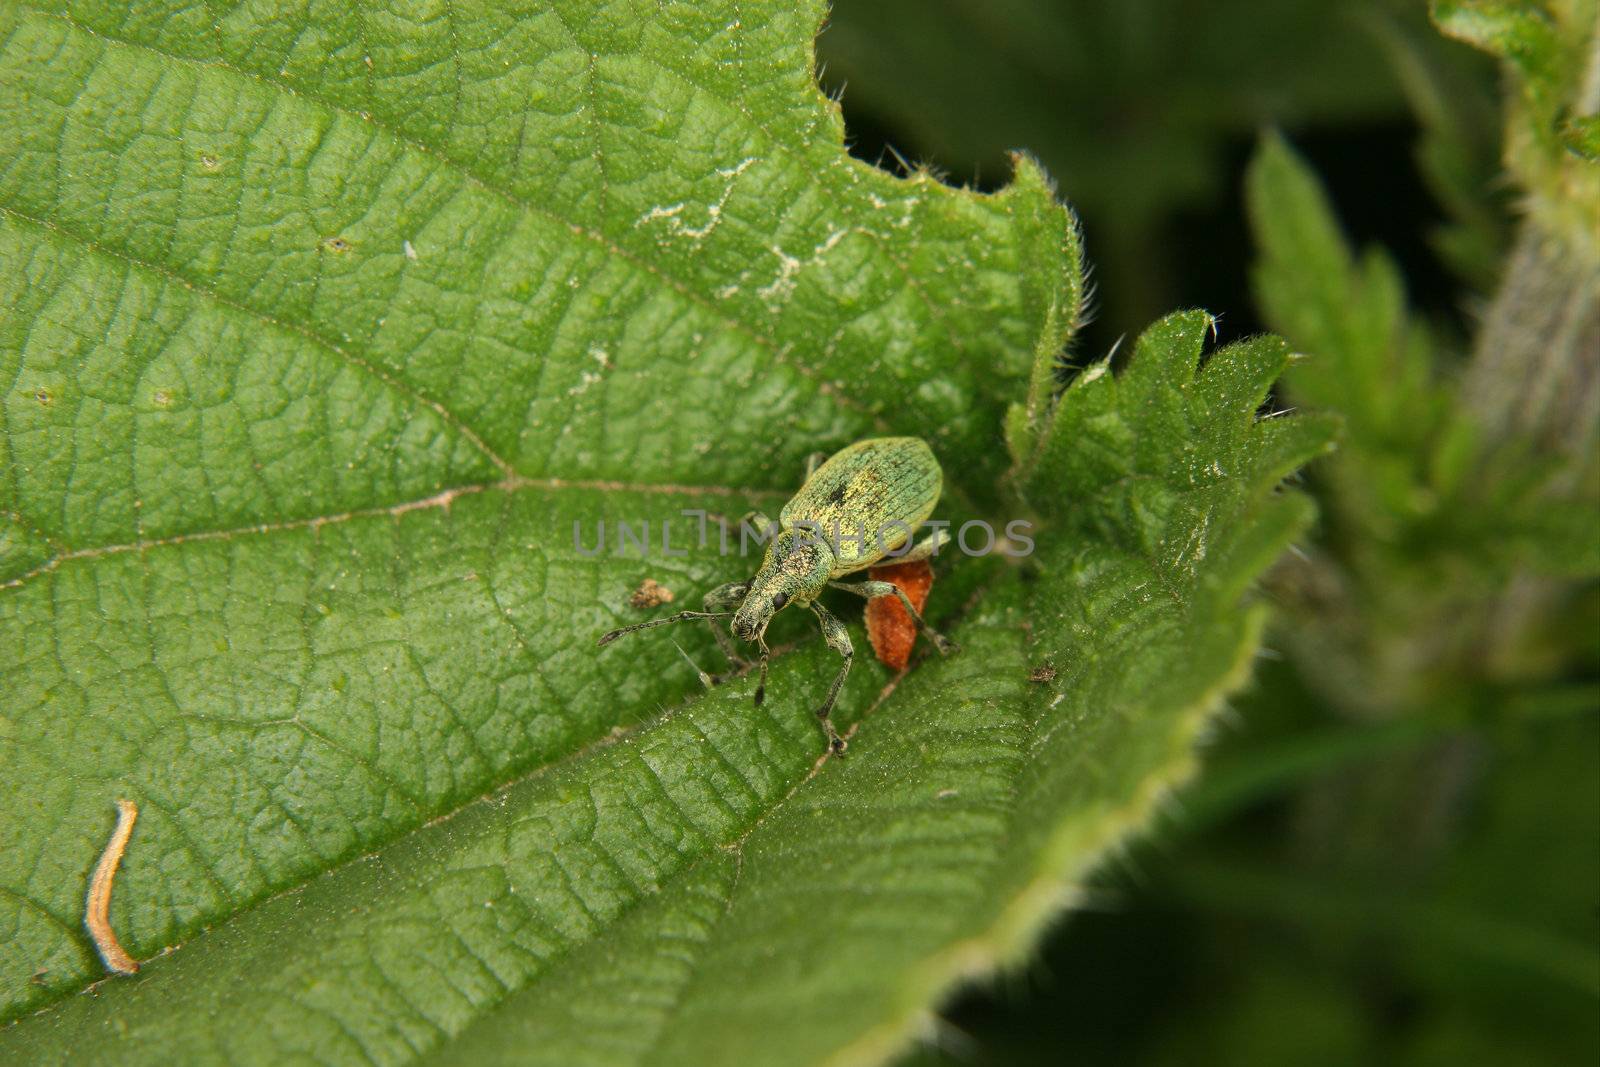 Weevil (Curculio) on a leaf